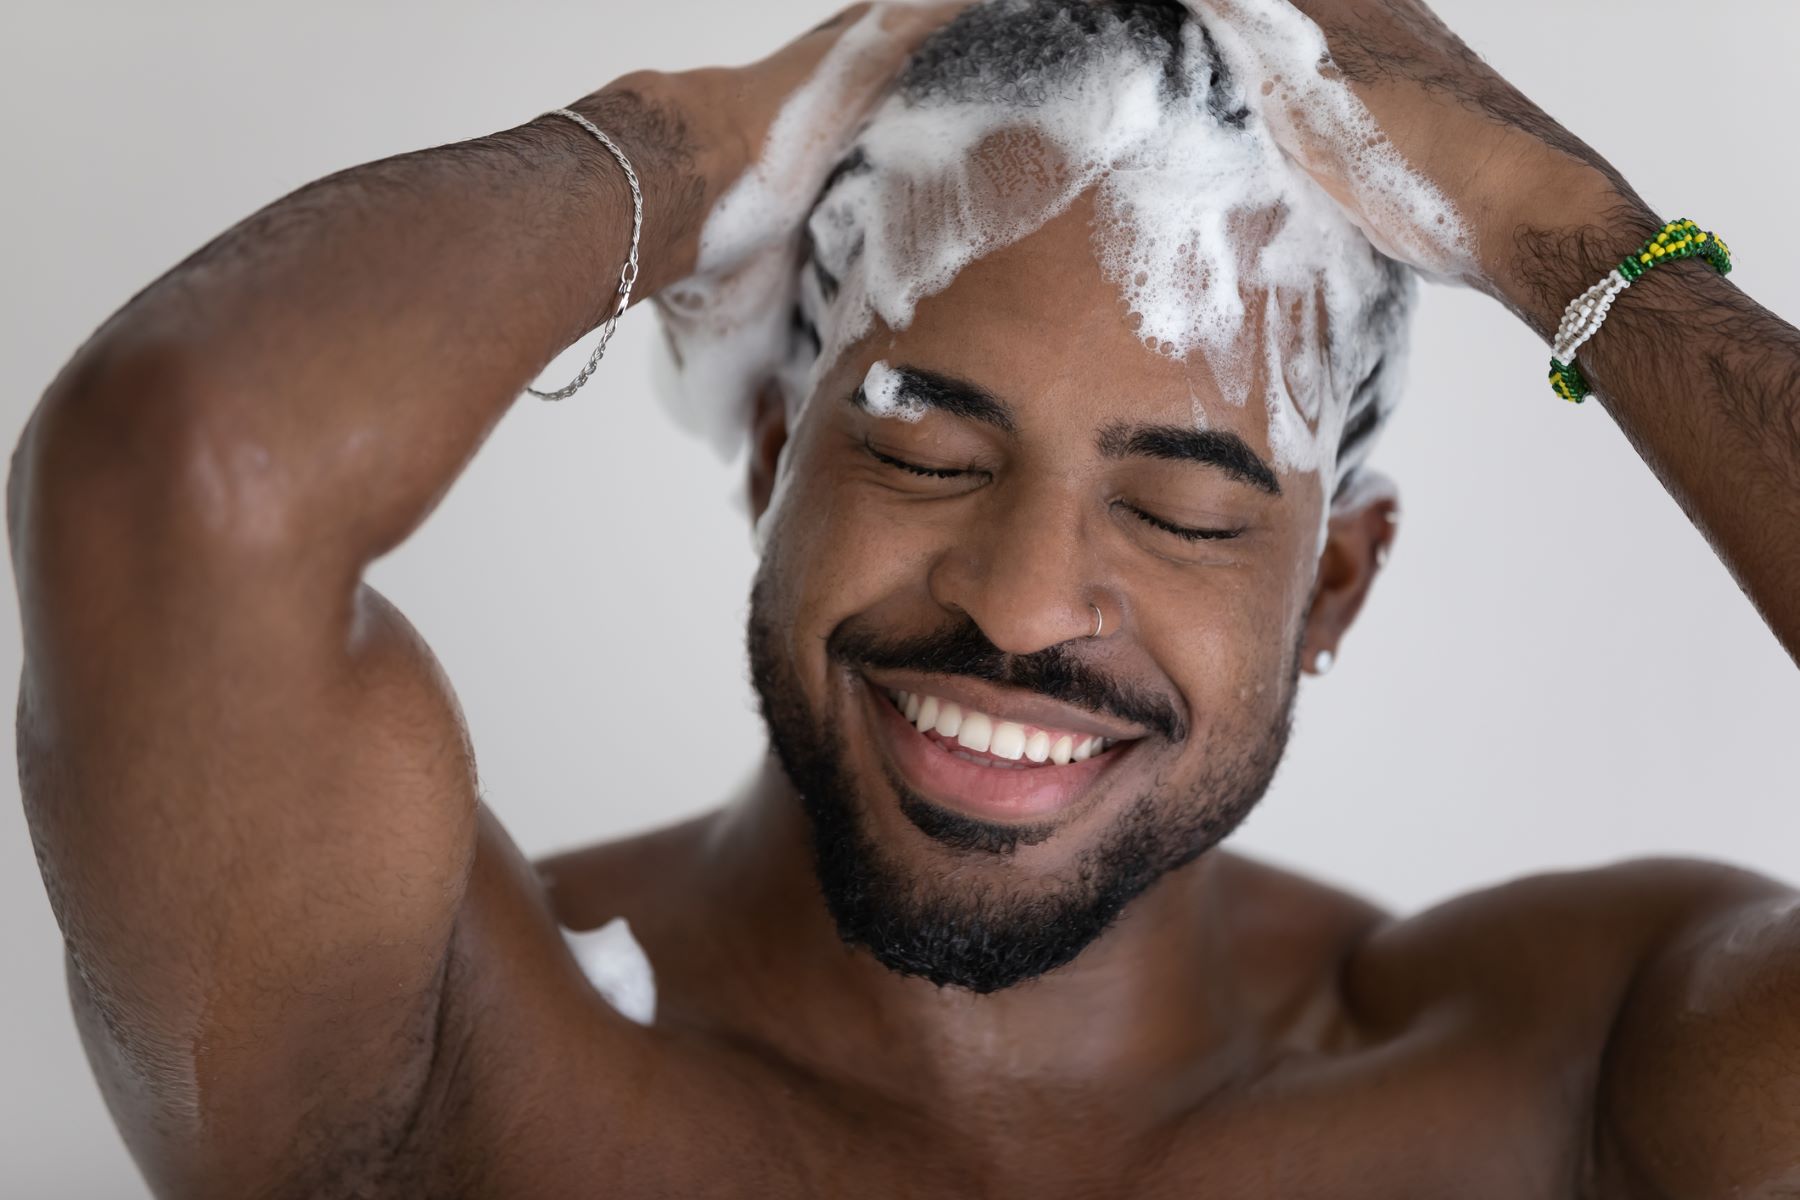 Man washing hair